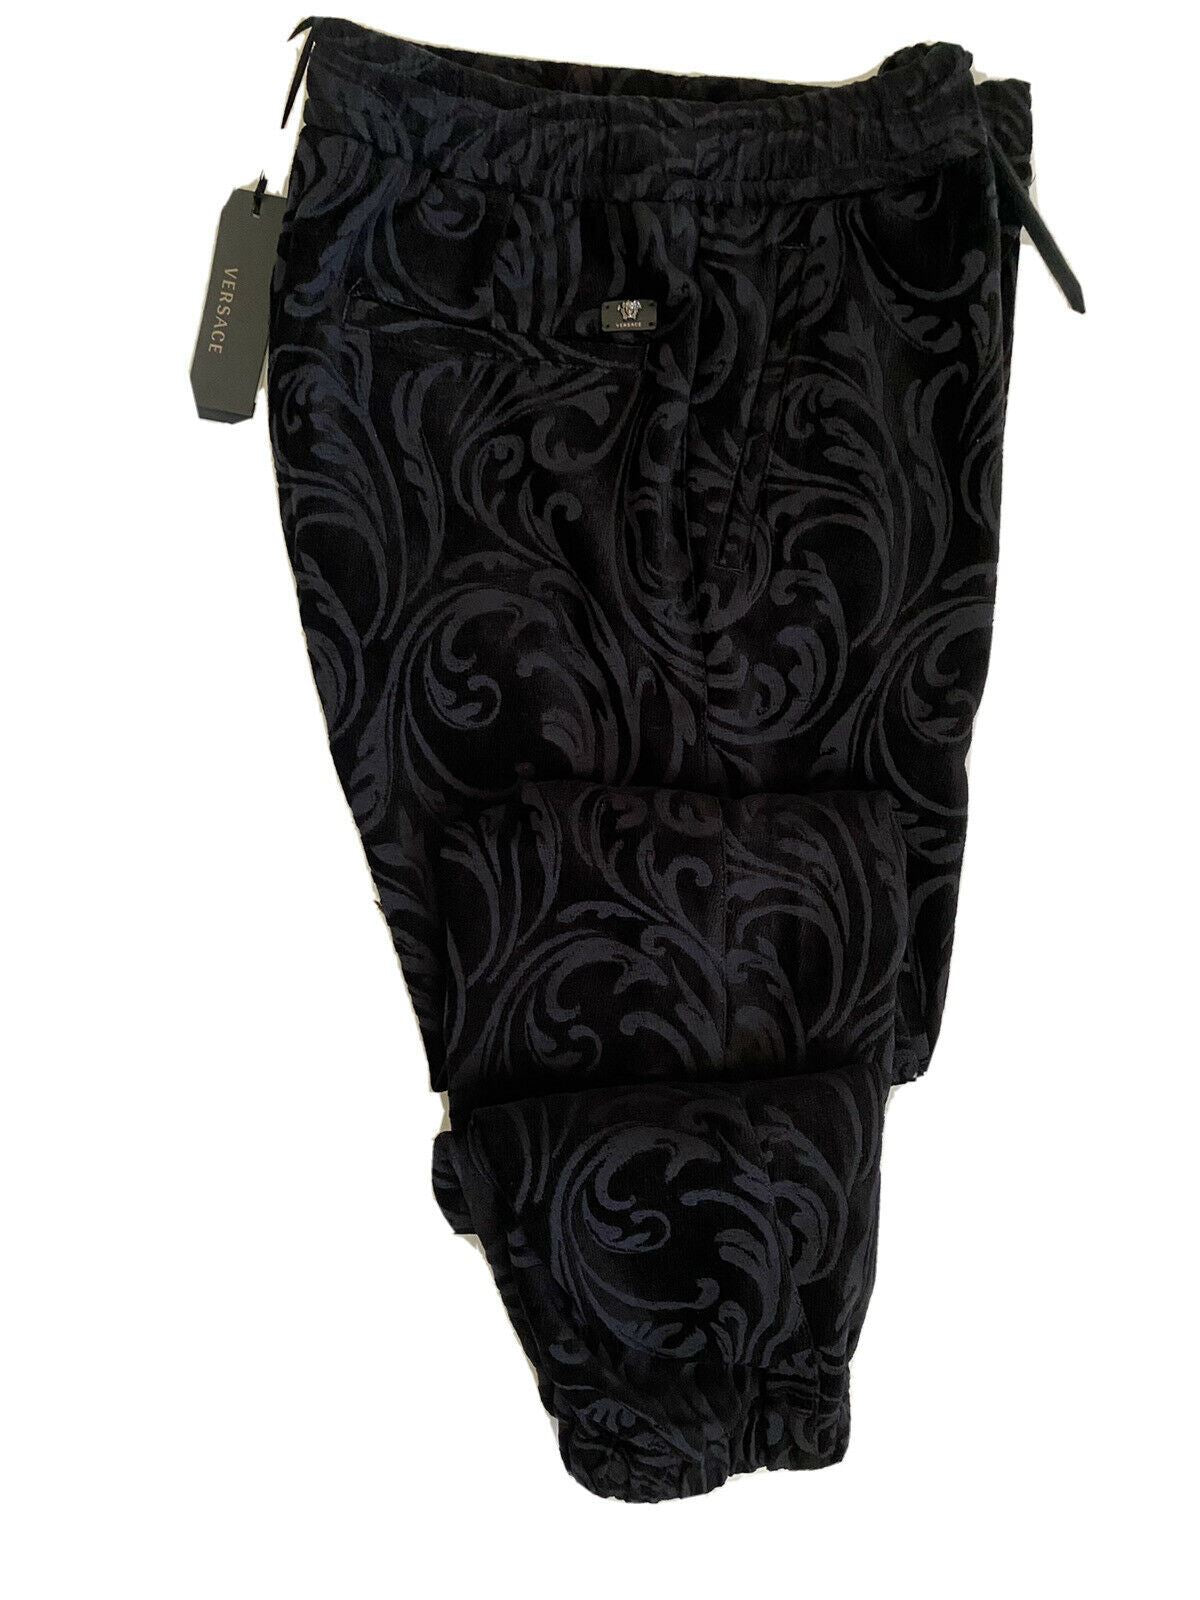 Мужские черные брюки для спортивной одежды Versace NWT $975, размер средний 3XL, Италия A79524